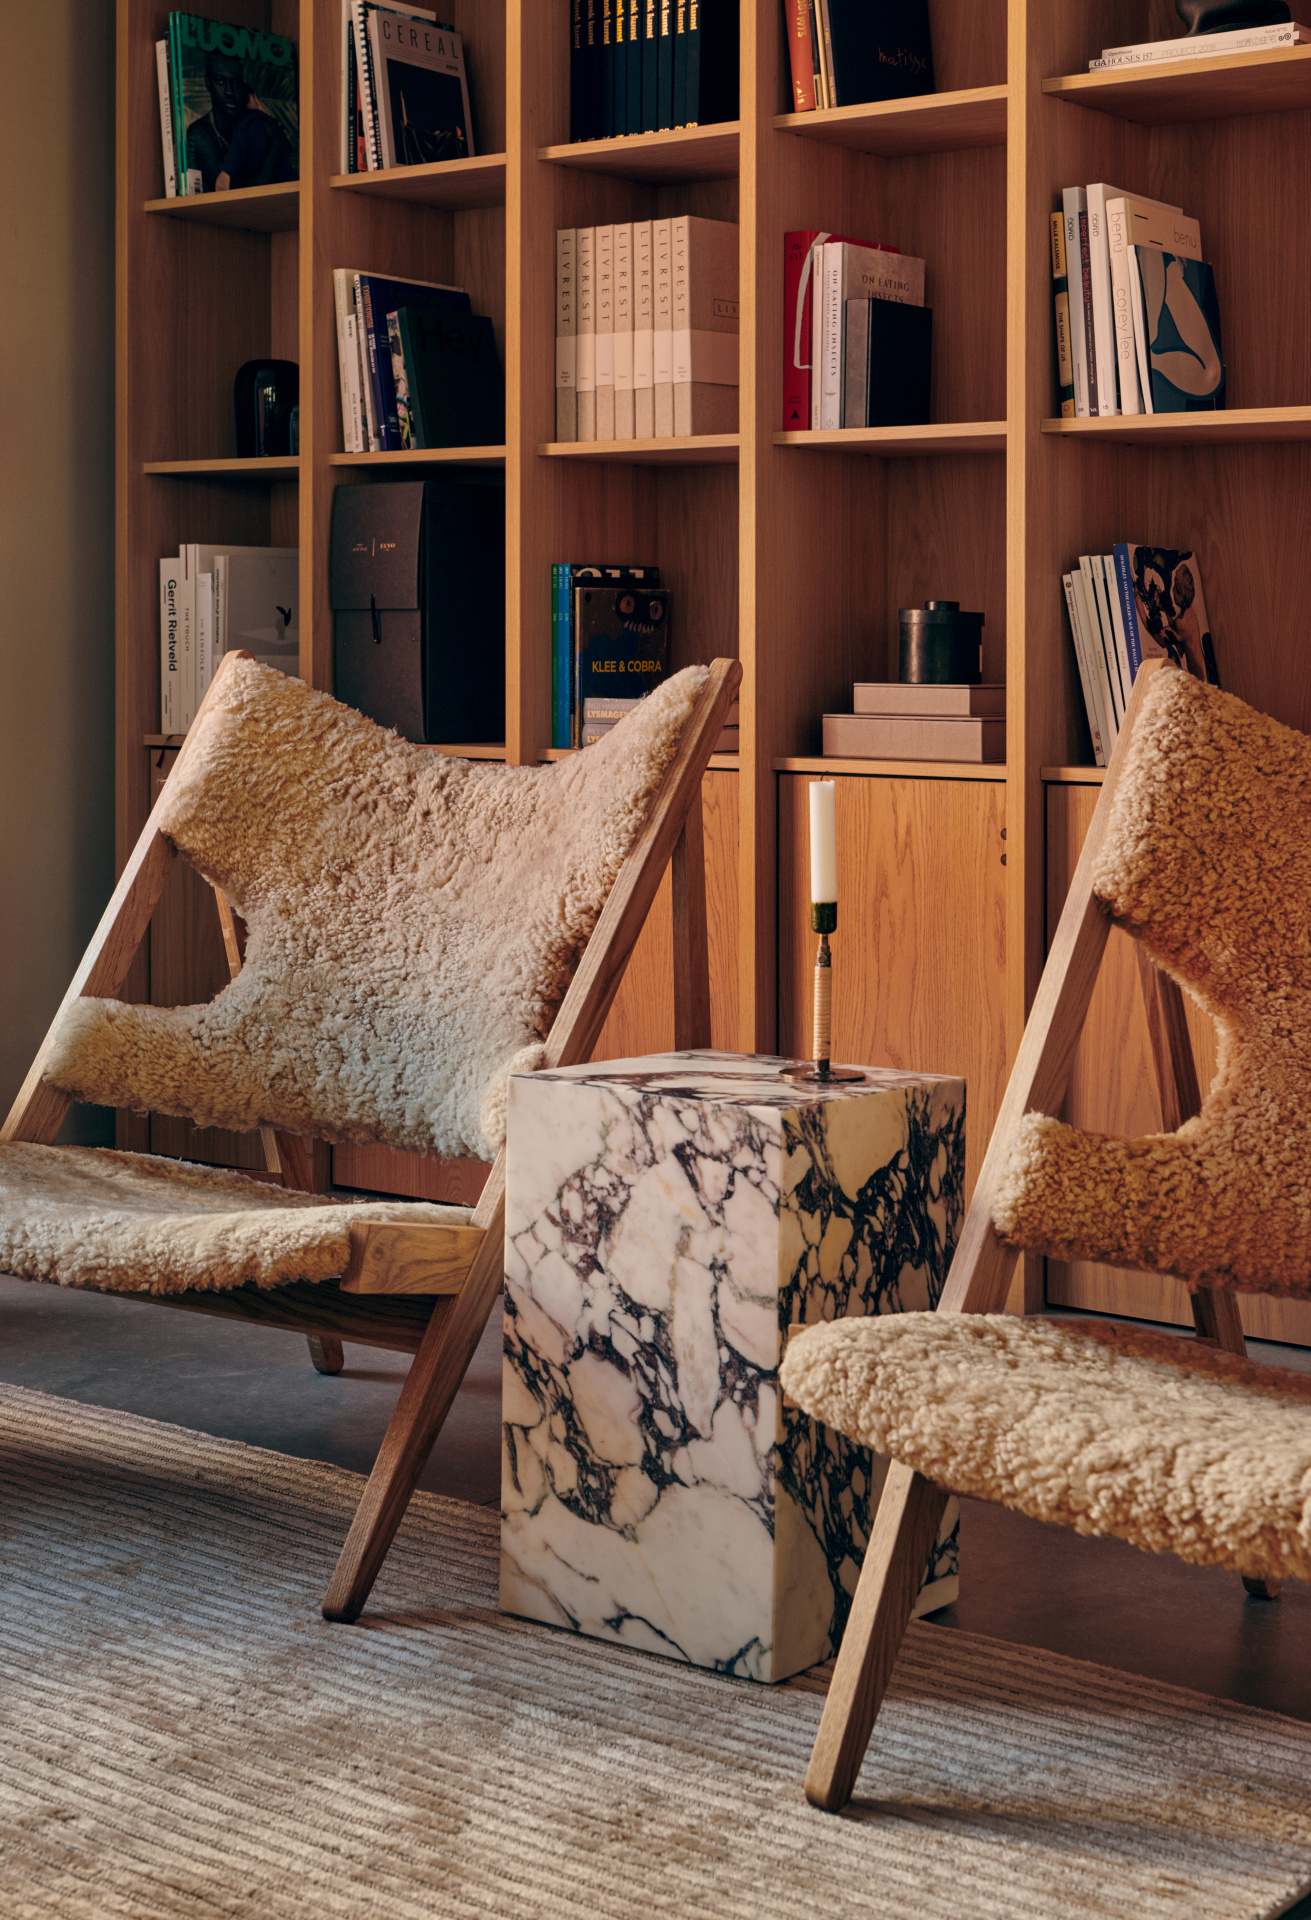 Кресла Knitting с обивкой из овчины, столик Plinth из мрамора Calatta Viola – датская фабрика Men